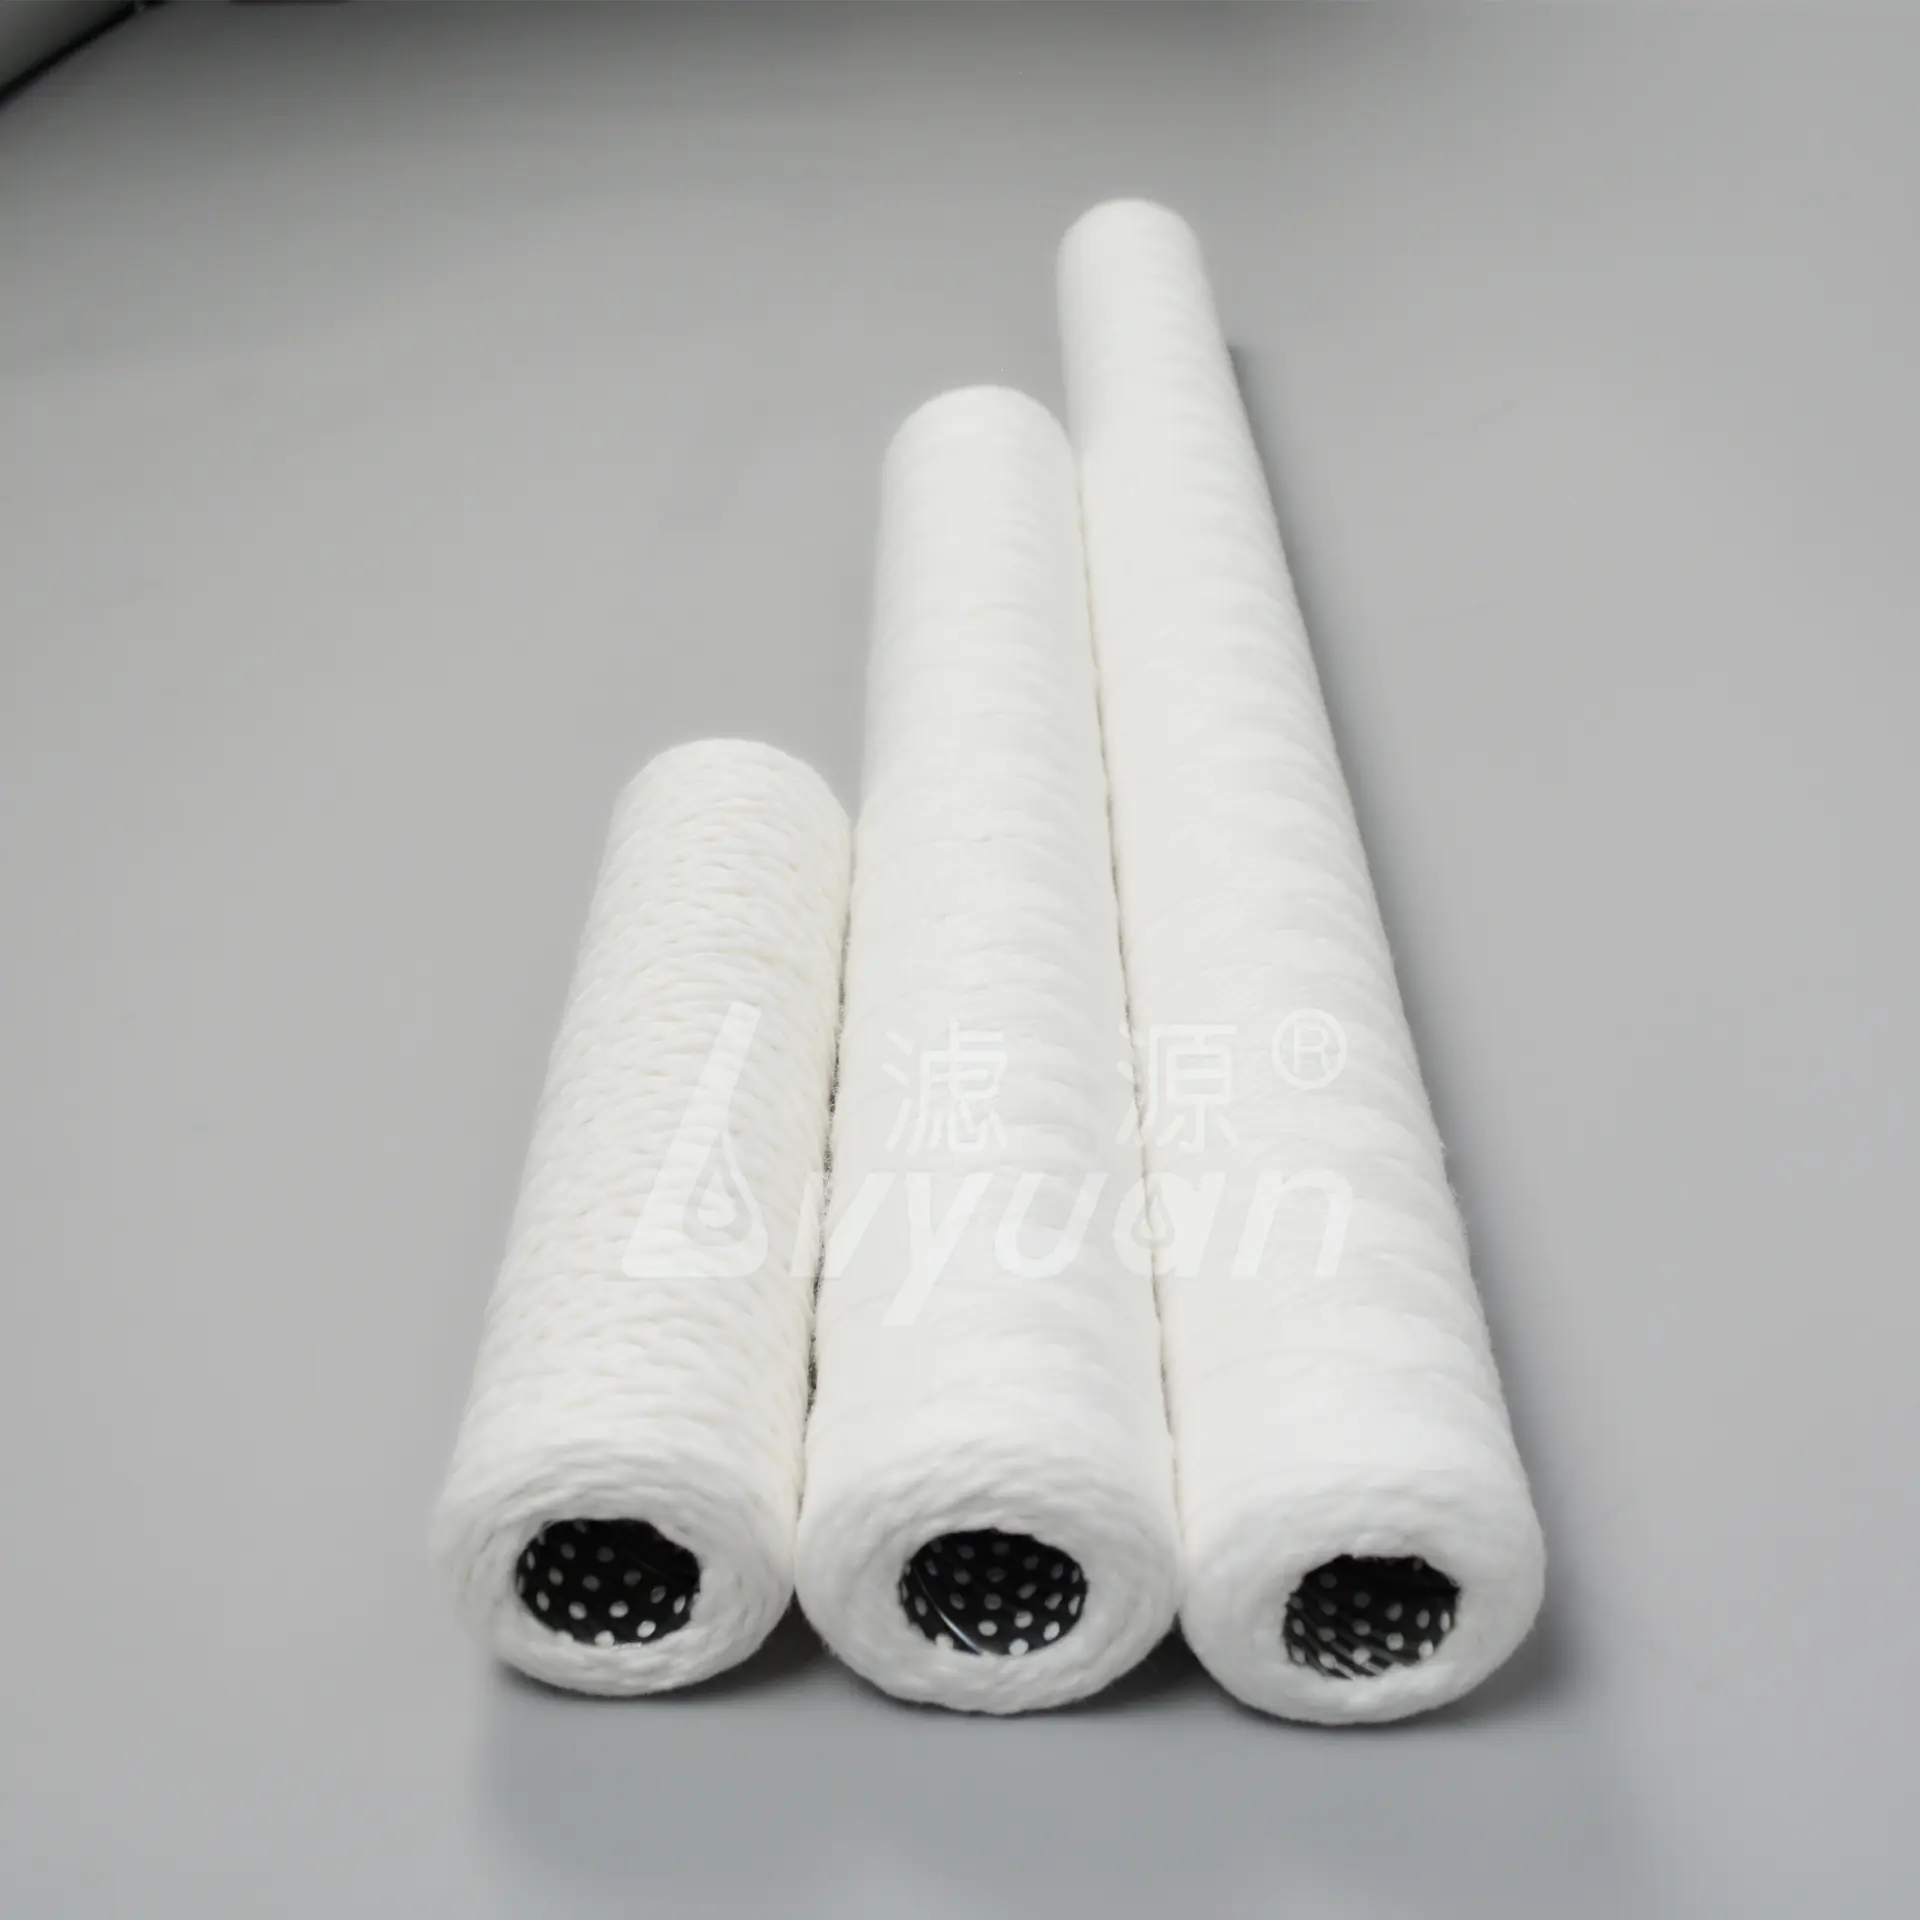 40 inch 5 micron polypropylene spun yarn water cartridge /cotton/ fiberglass string wound water filter cartridge